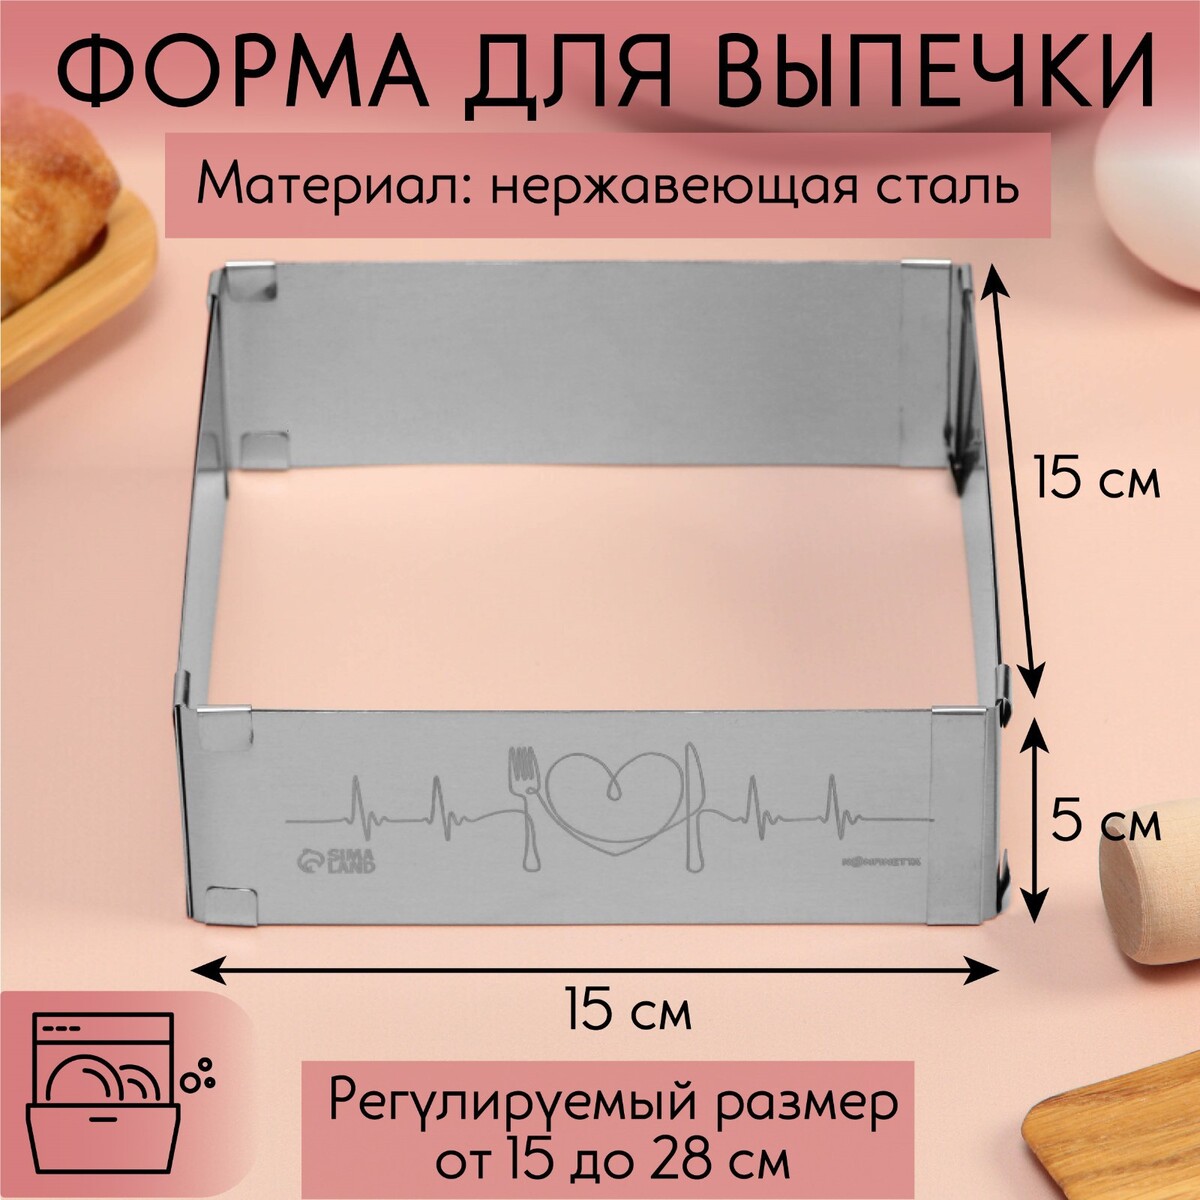 Форма для выпечки прямоугольная с регулировкой размера love, h-5 см, 15x15 - 28x28 см форма для выпечки прямоугольная 44 х 29 см dekok